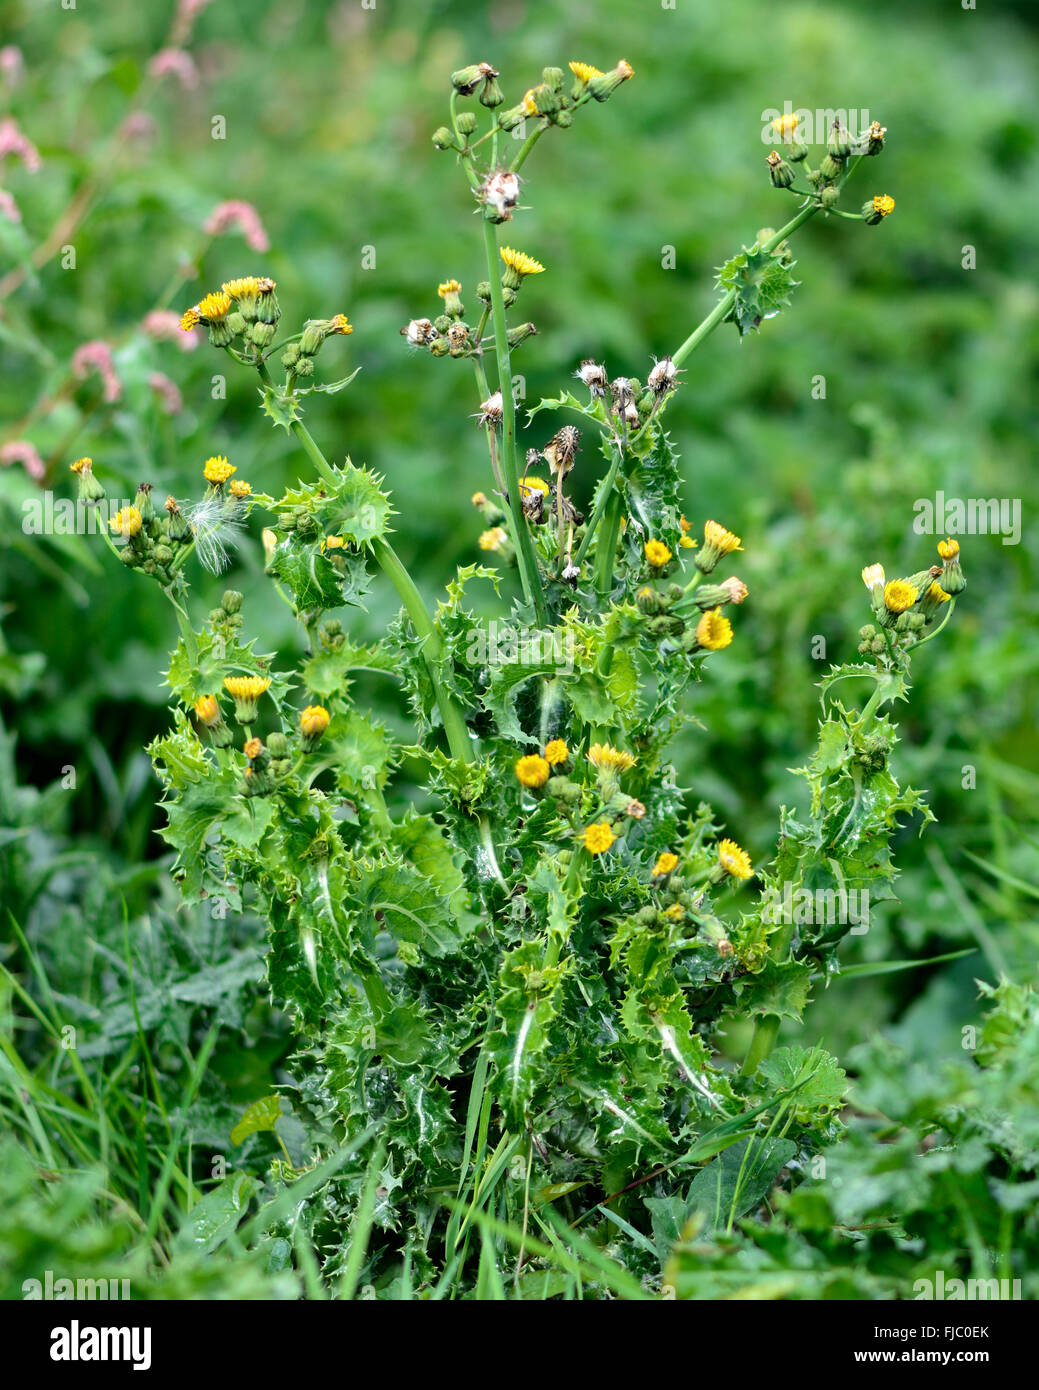 Stachelige Sau-Distel (Sonchus Asper). Stachelige Pflanze in der Familie der Korbblütler (Asteraceae), mit gelben Blüten und stacheligen Blättern Stockfoto